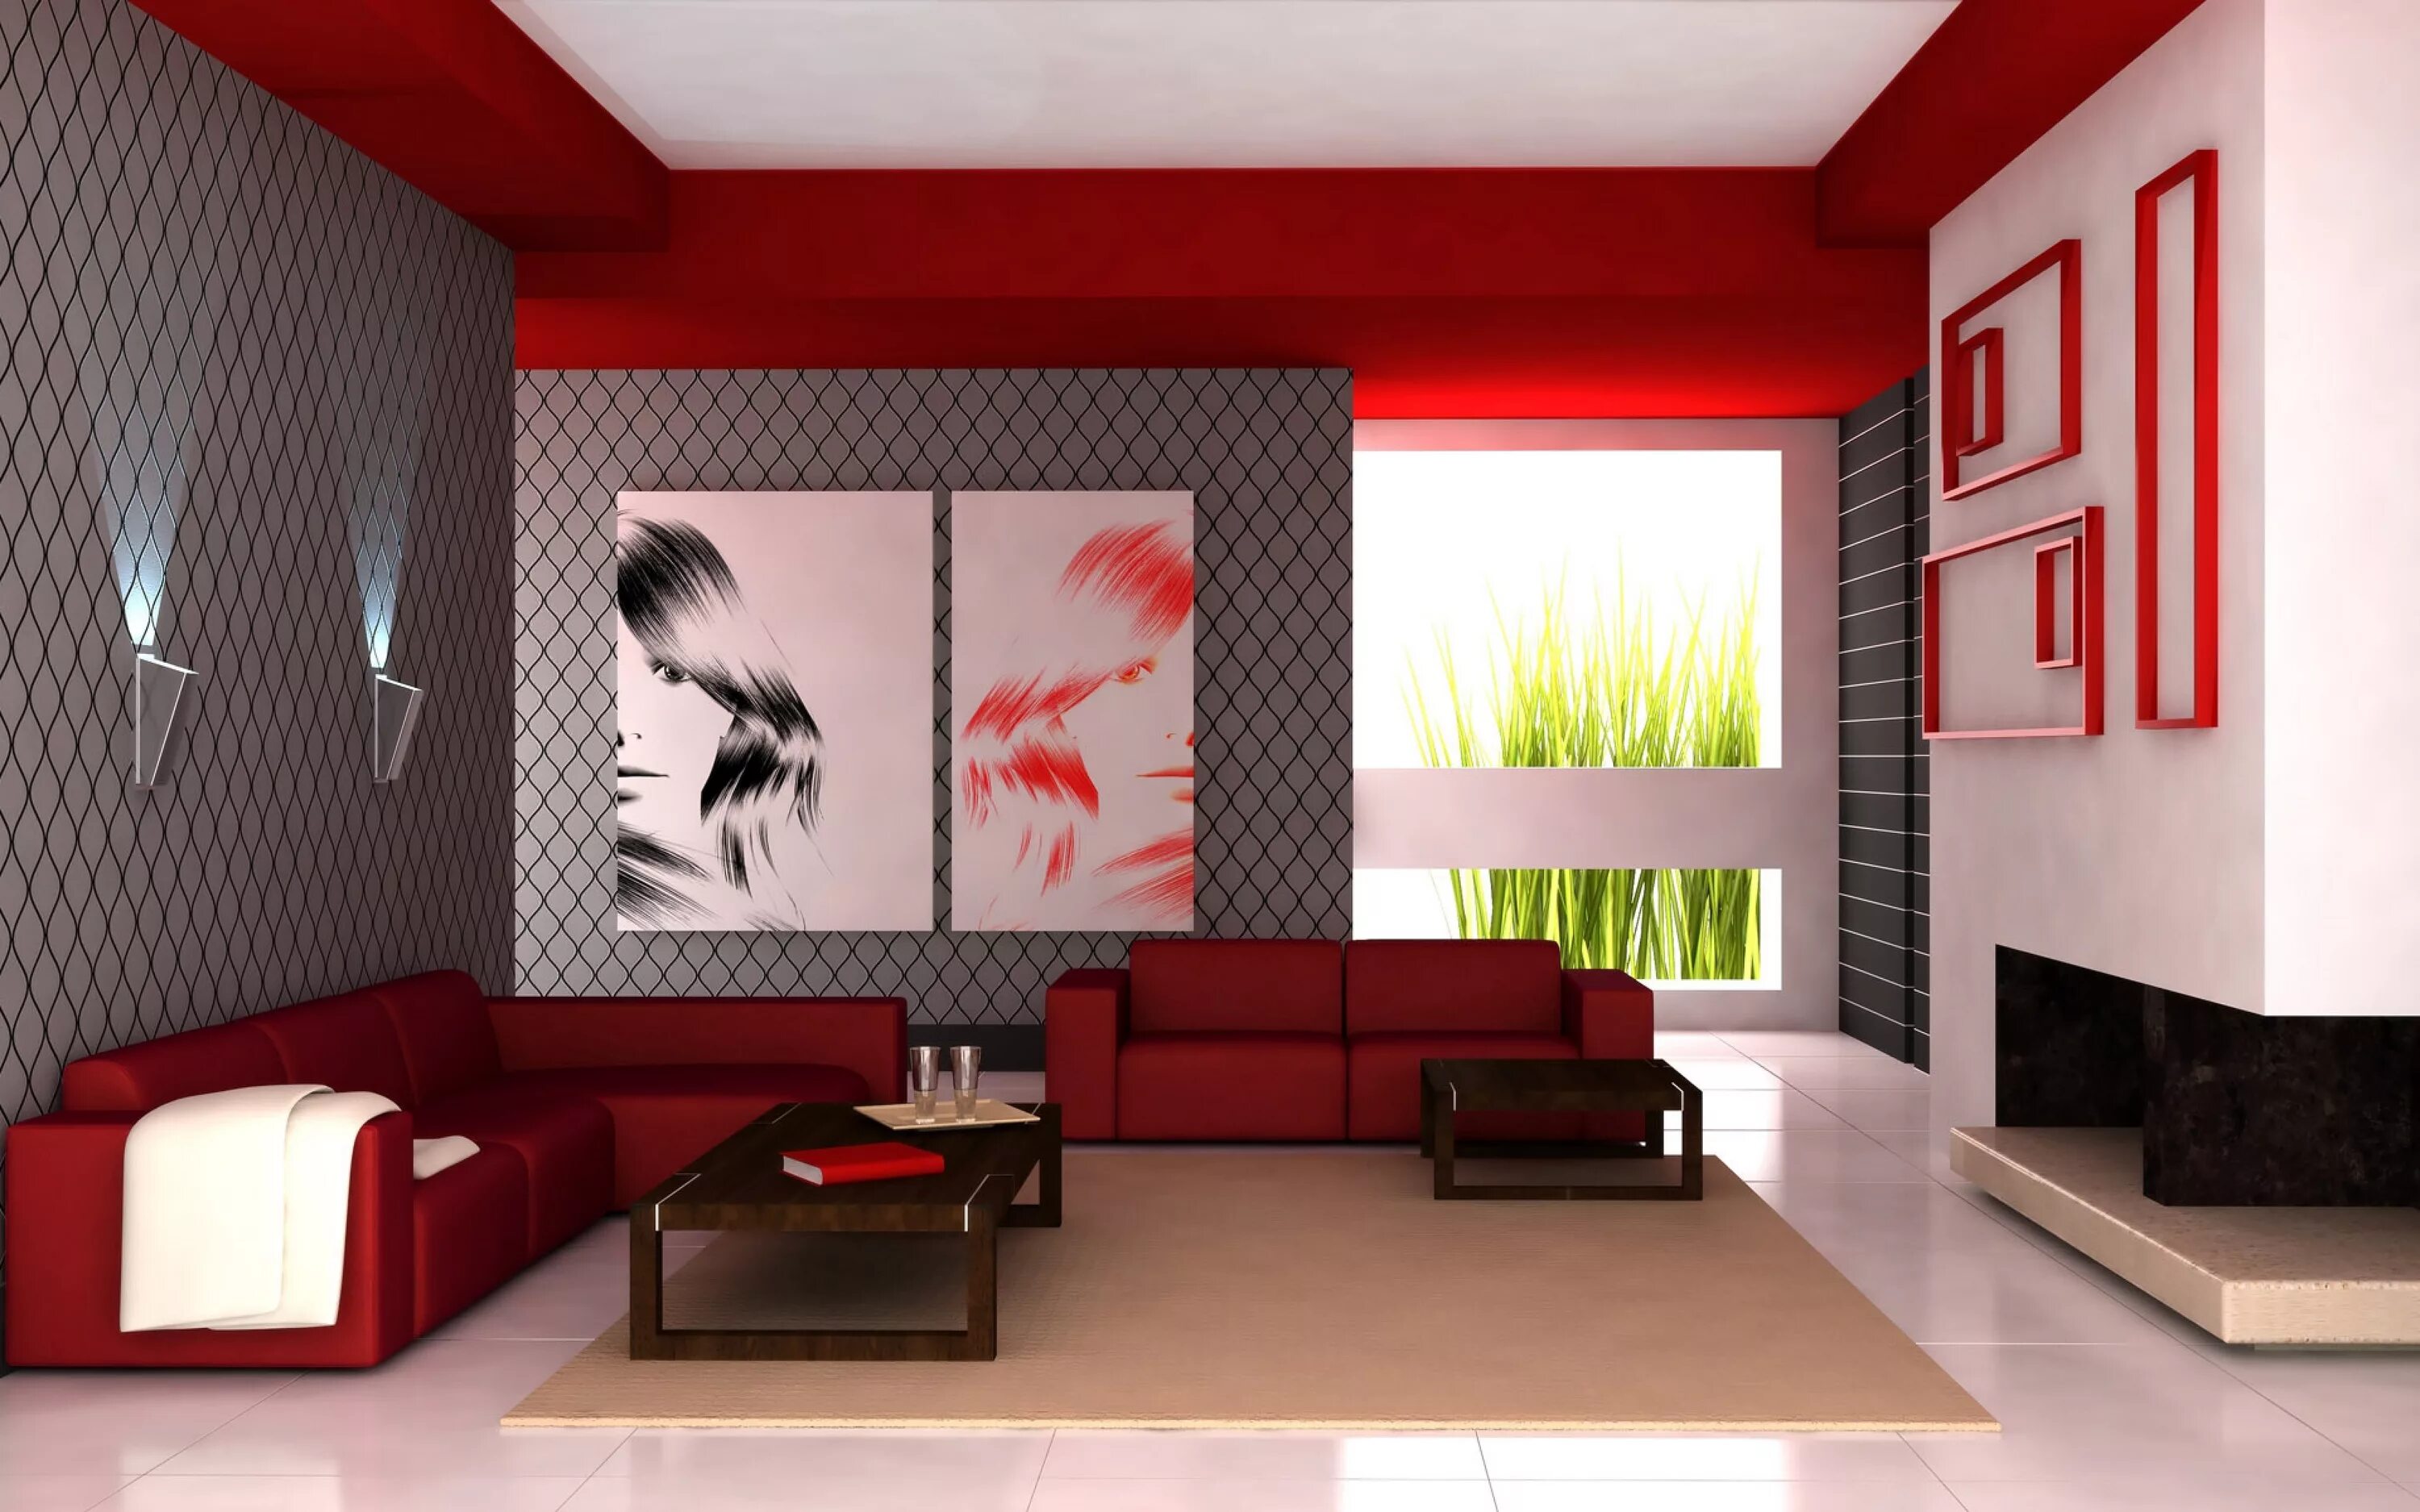 Обои в дизайне интерьера. Интерьер комнаты. Интерьер гостиной комнаты. Интерьер в красных тонах. Красный цвет в интерьере.